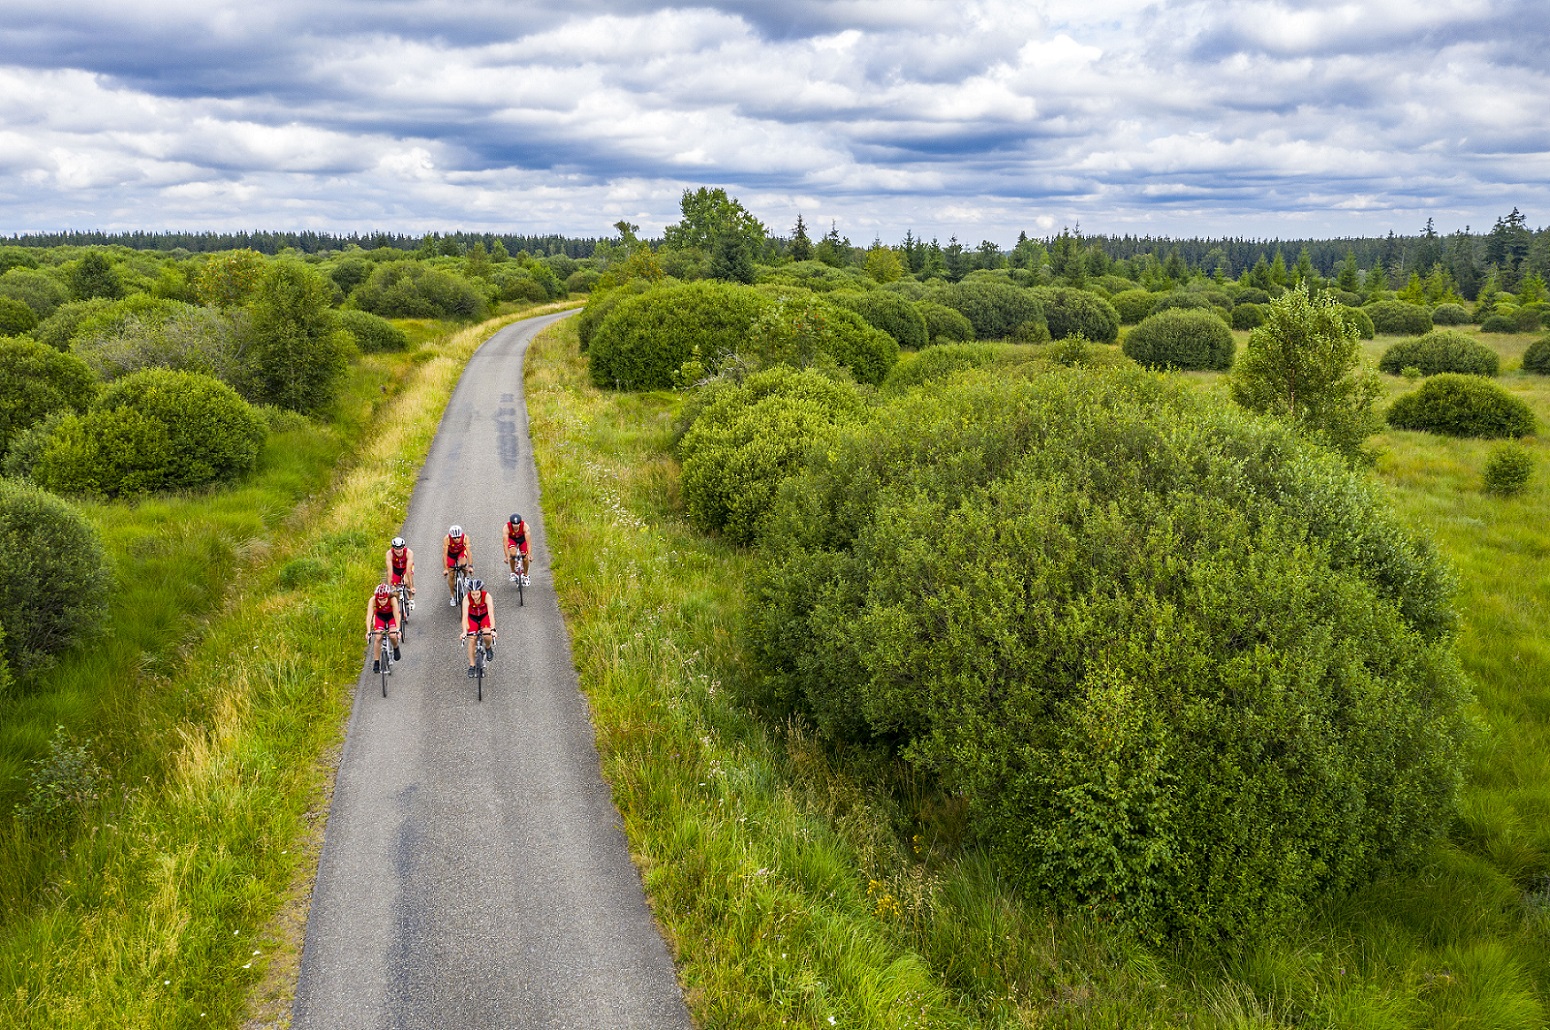 Paysage des Hautes Fagnes. Sur un chemin asphalté, on peut voir les cinq triathlètes s'entraîner sur leurs vélos de course.